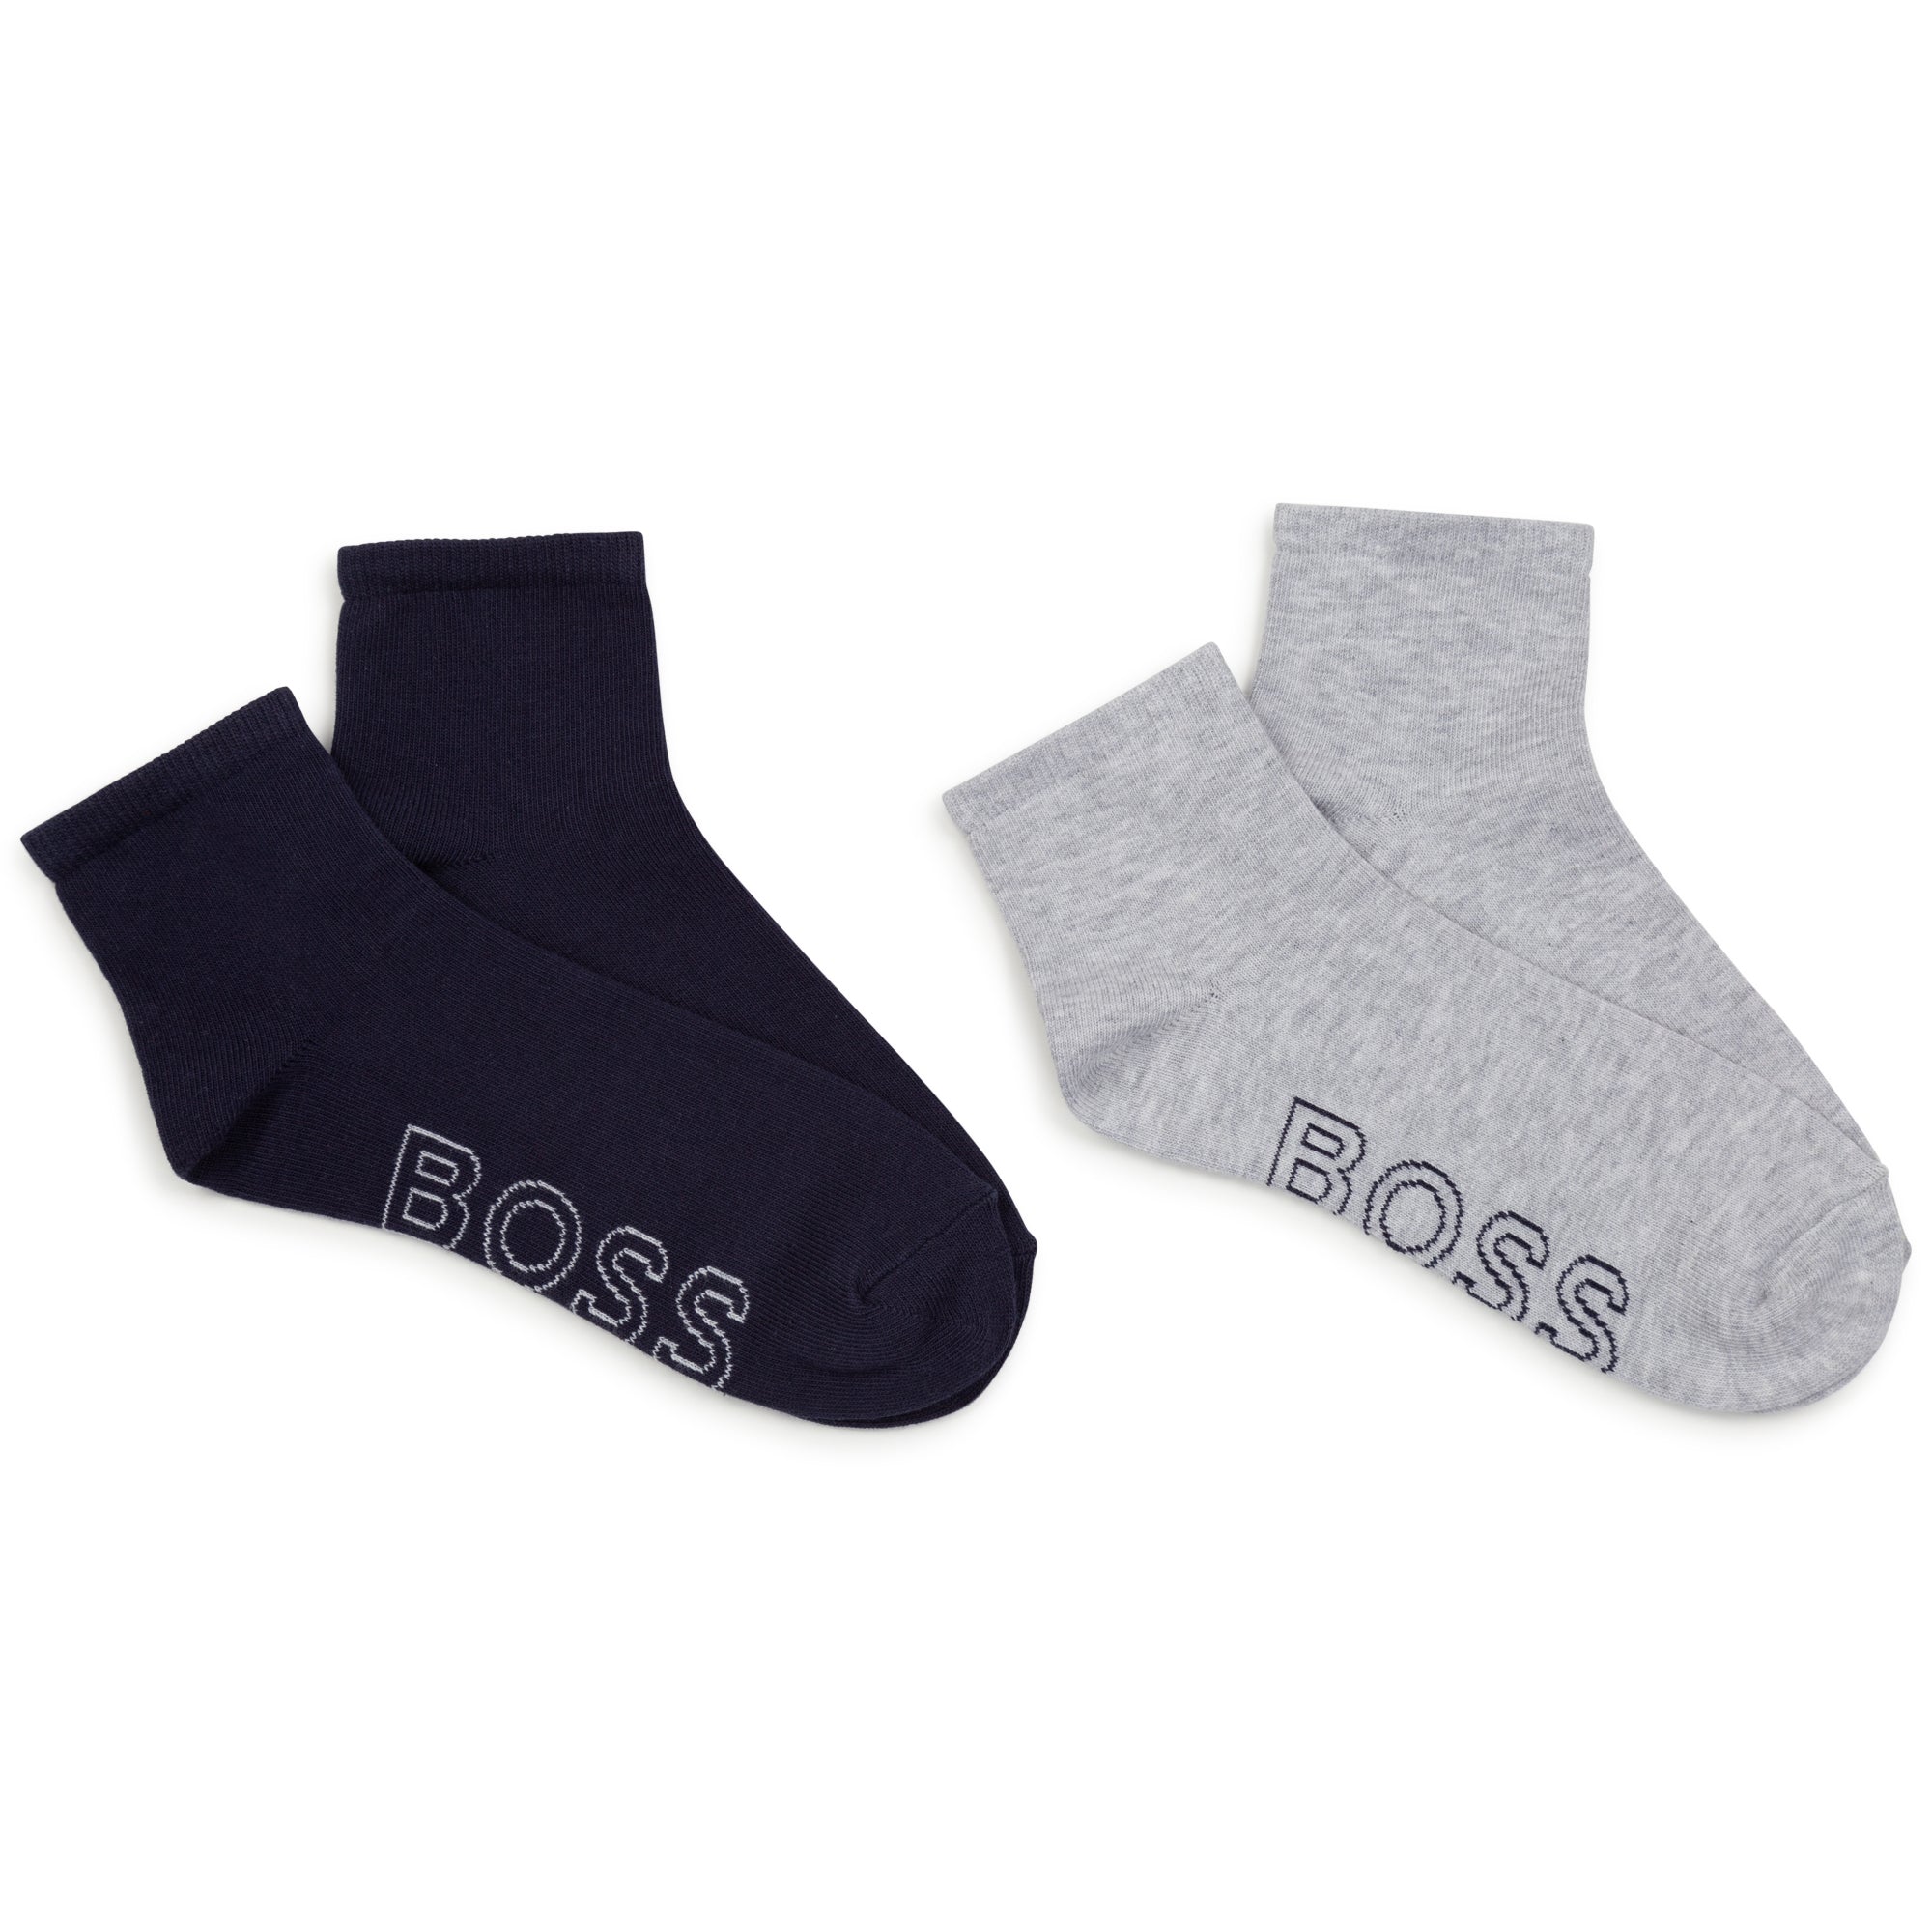 Hugo Boss Socks Set